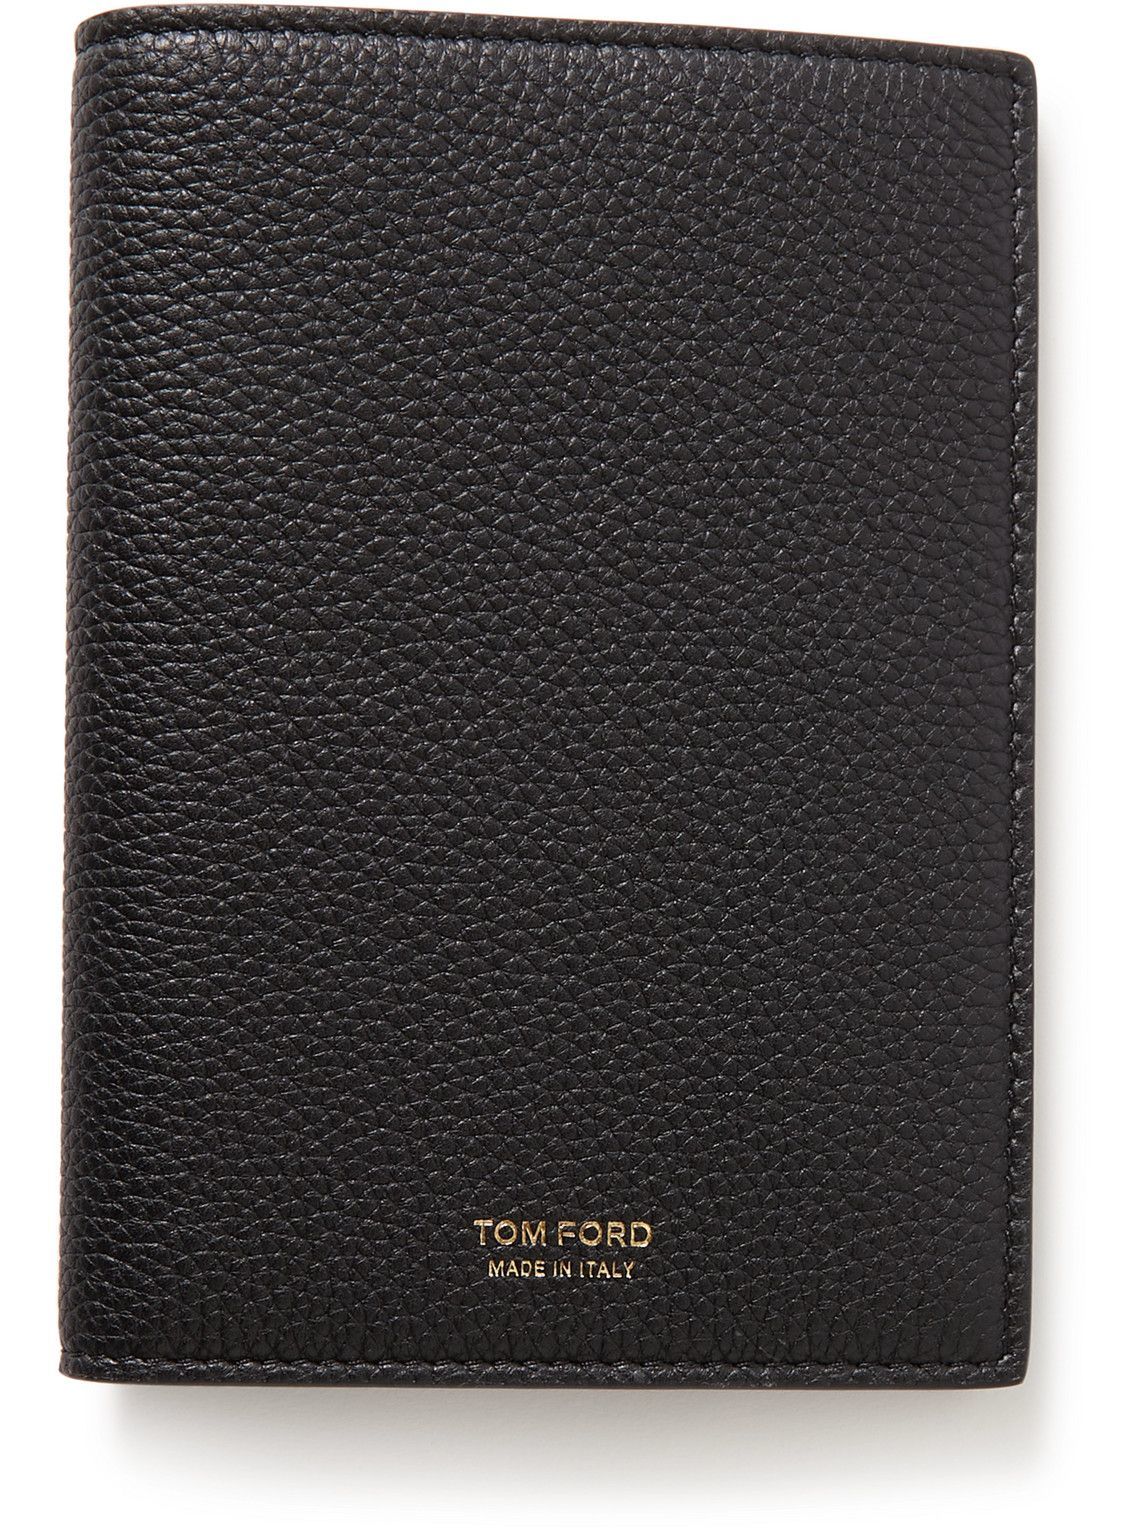 TOM FORD - Full-Grain Leather Passport Holder TOM FORD